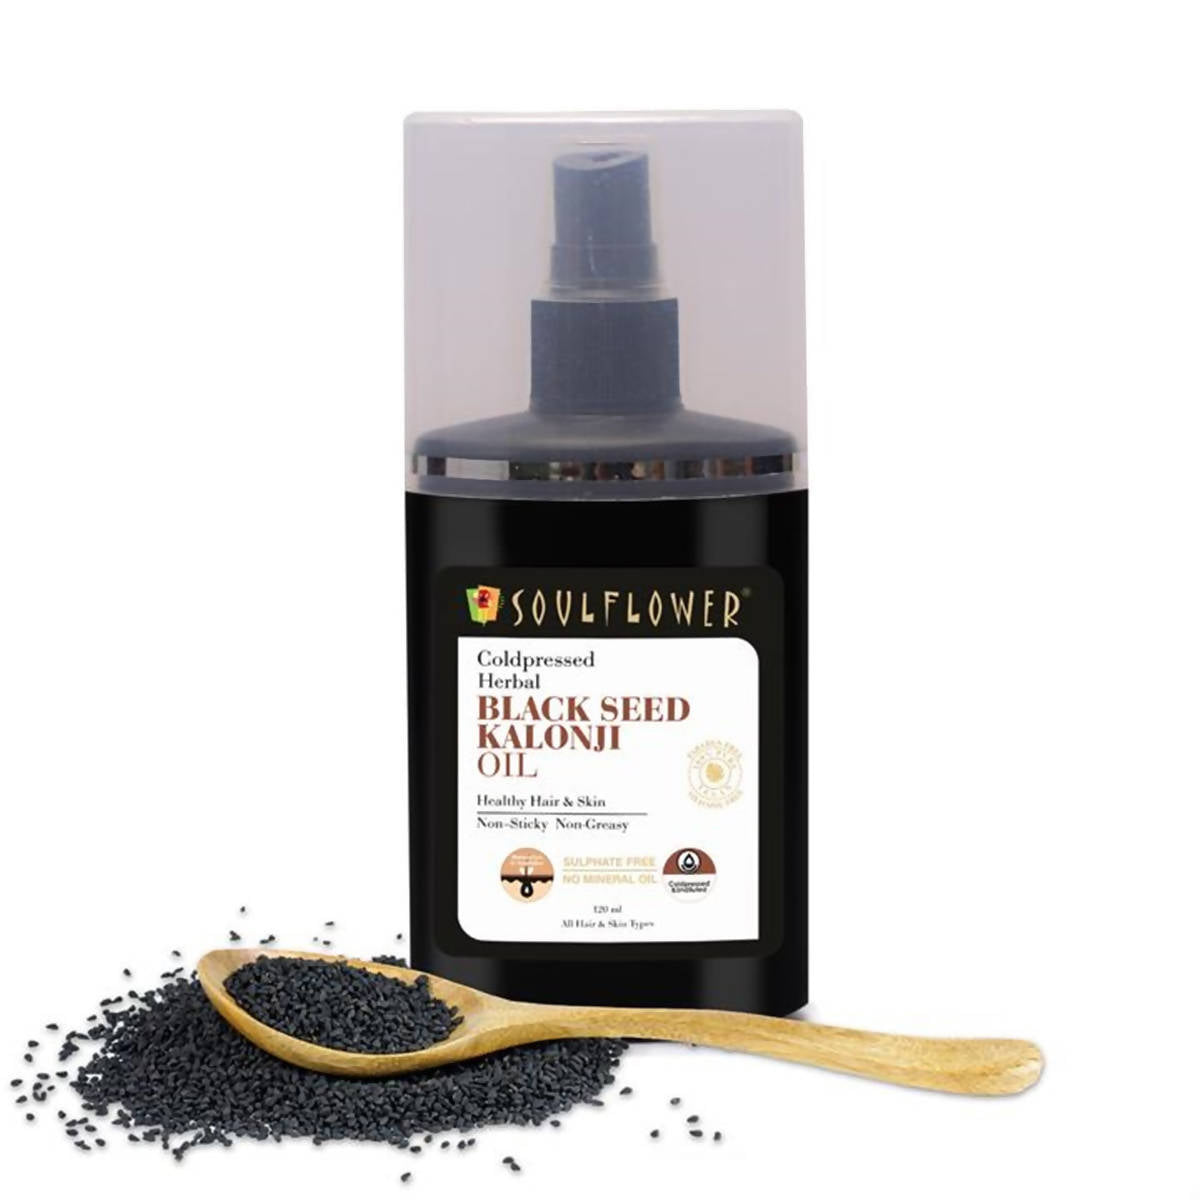 Soulflower Herbal Coldpressed Black Seed Kalonji Oil